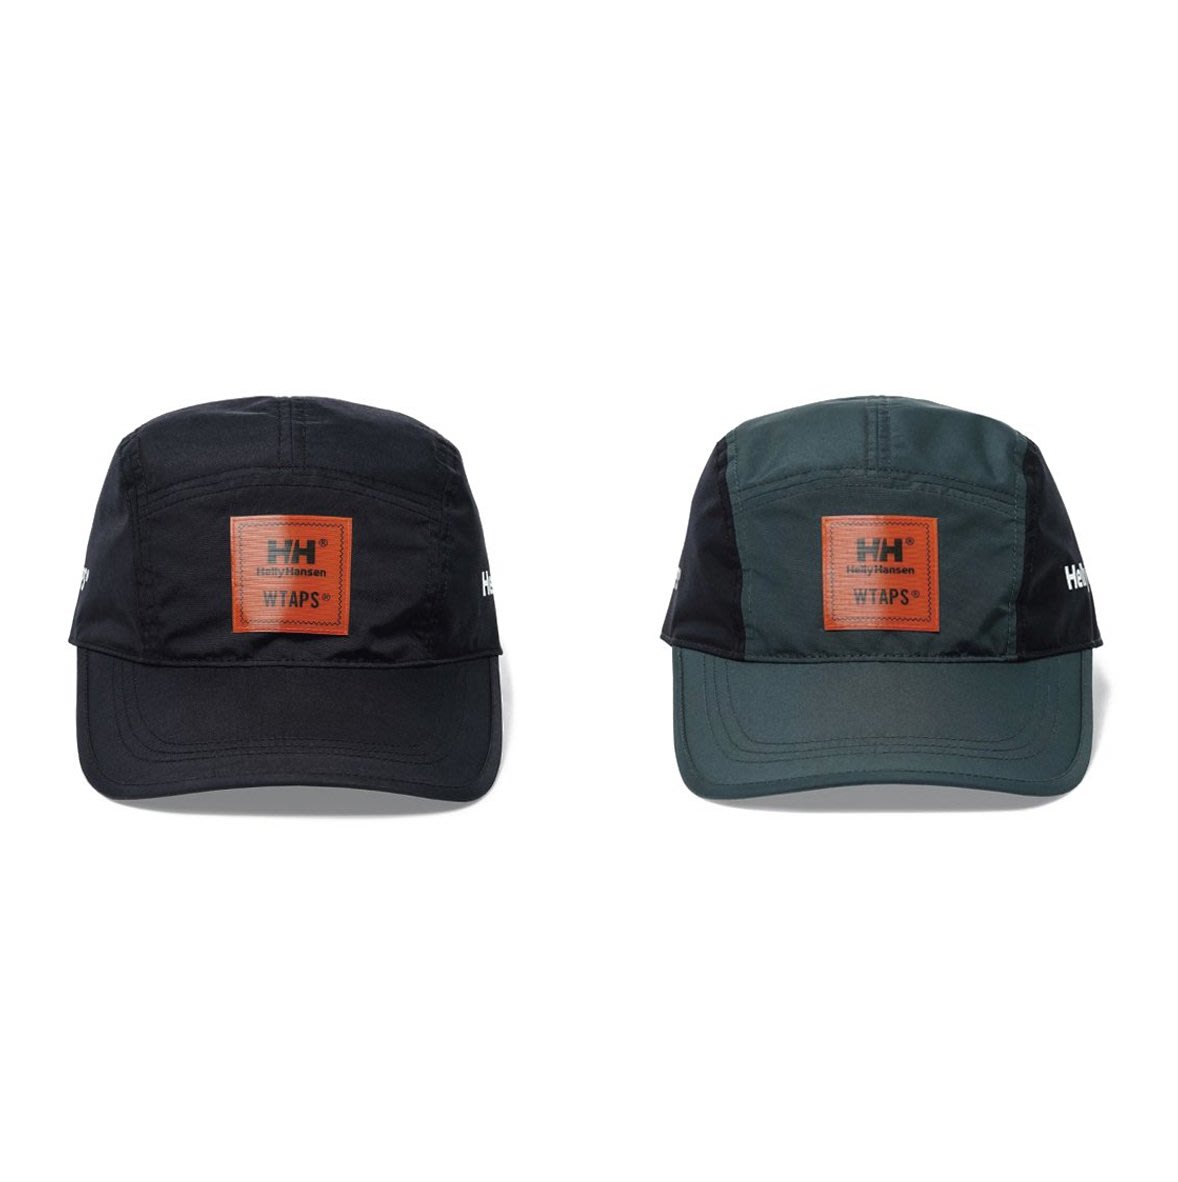 希望商店】WTAPS x HELLY HANSEN T-5 01 CAP 20SS 聯名 機能 五分割帽